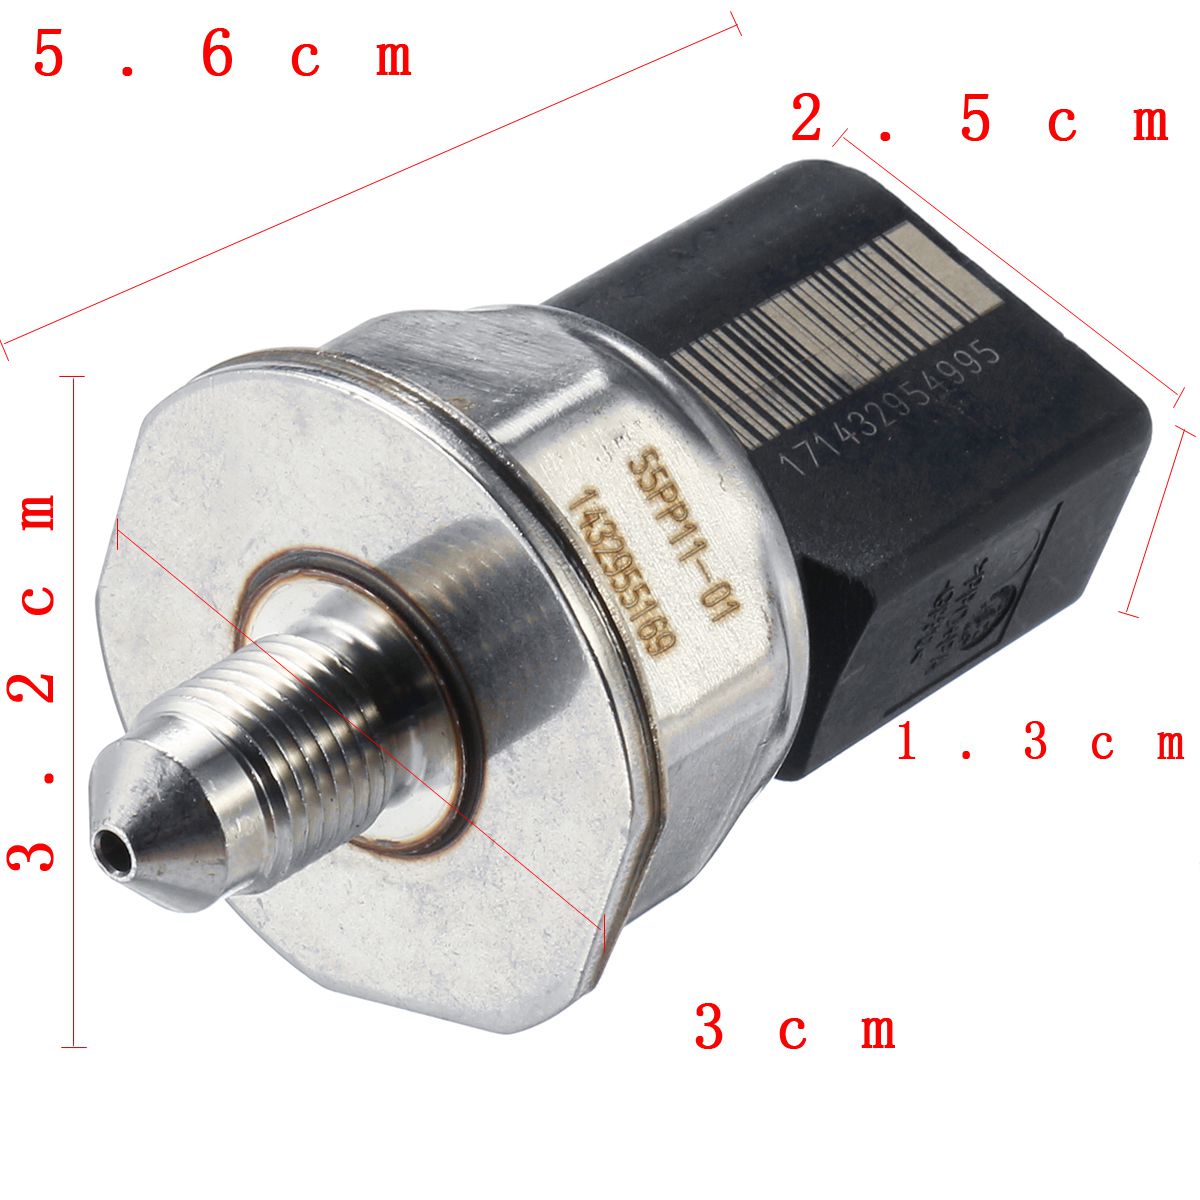 Car-Fuel-Pressure-Sensor-Sender-Transducer-for-BMW-F01-F07-E46-E60-E71-E82-E90-E91-E92-1449098